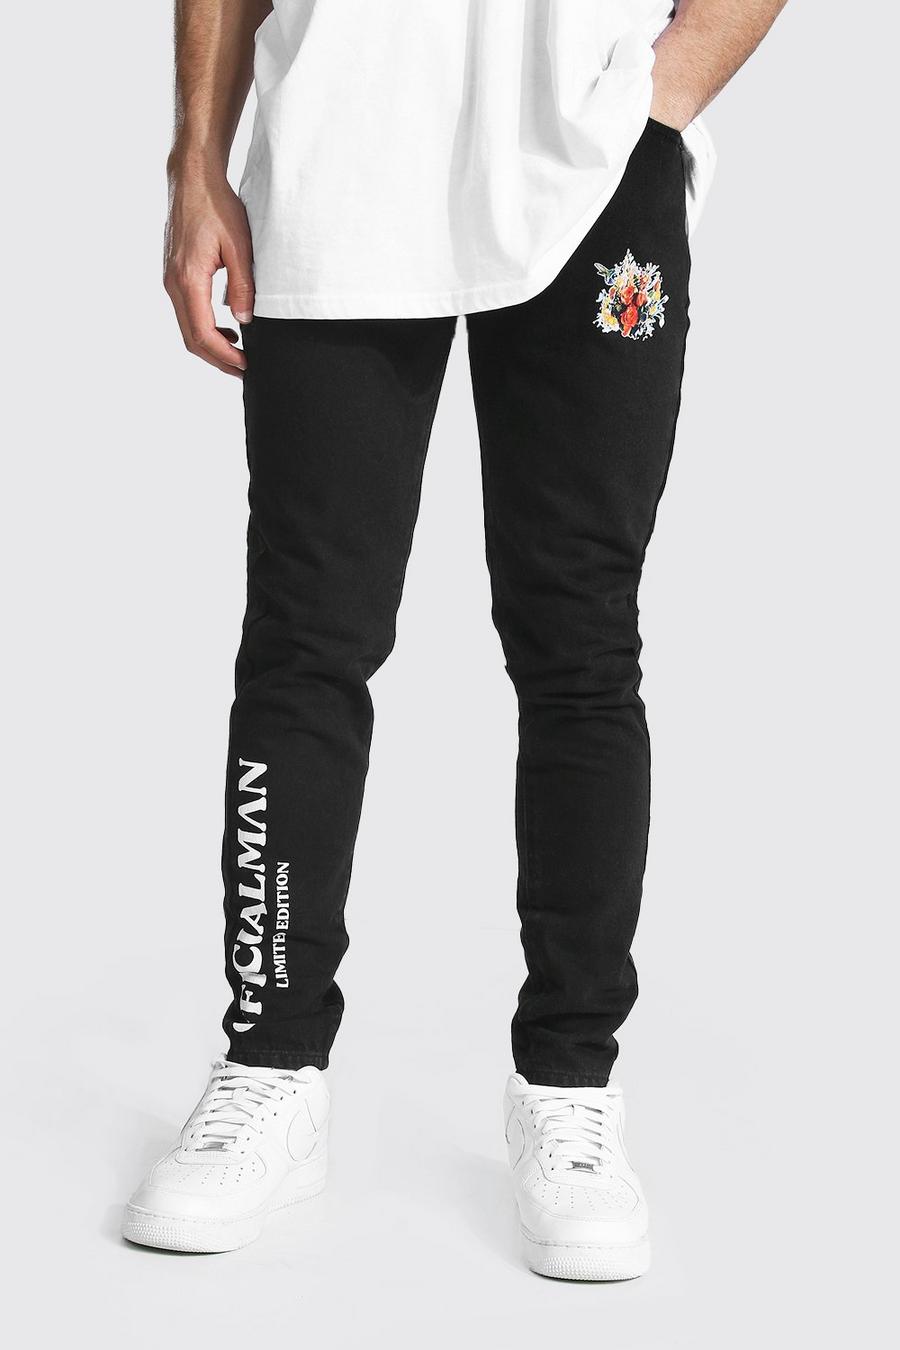 שחור דהוי ג'ינס סקיני קשיח עם הדפס פרח וכיתוב Man image number 1